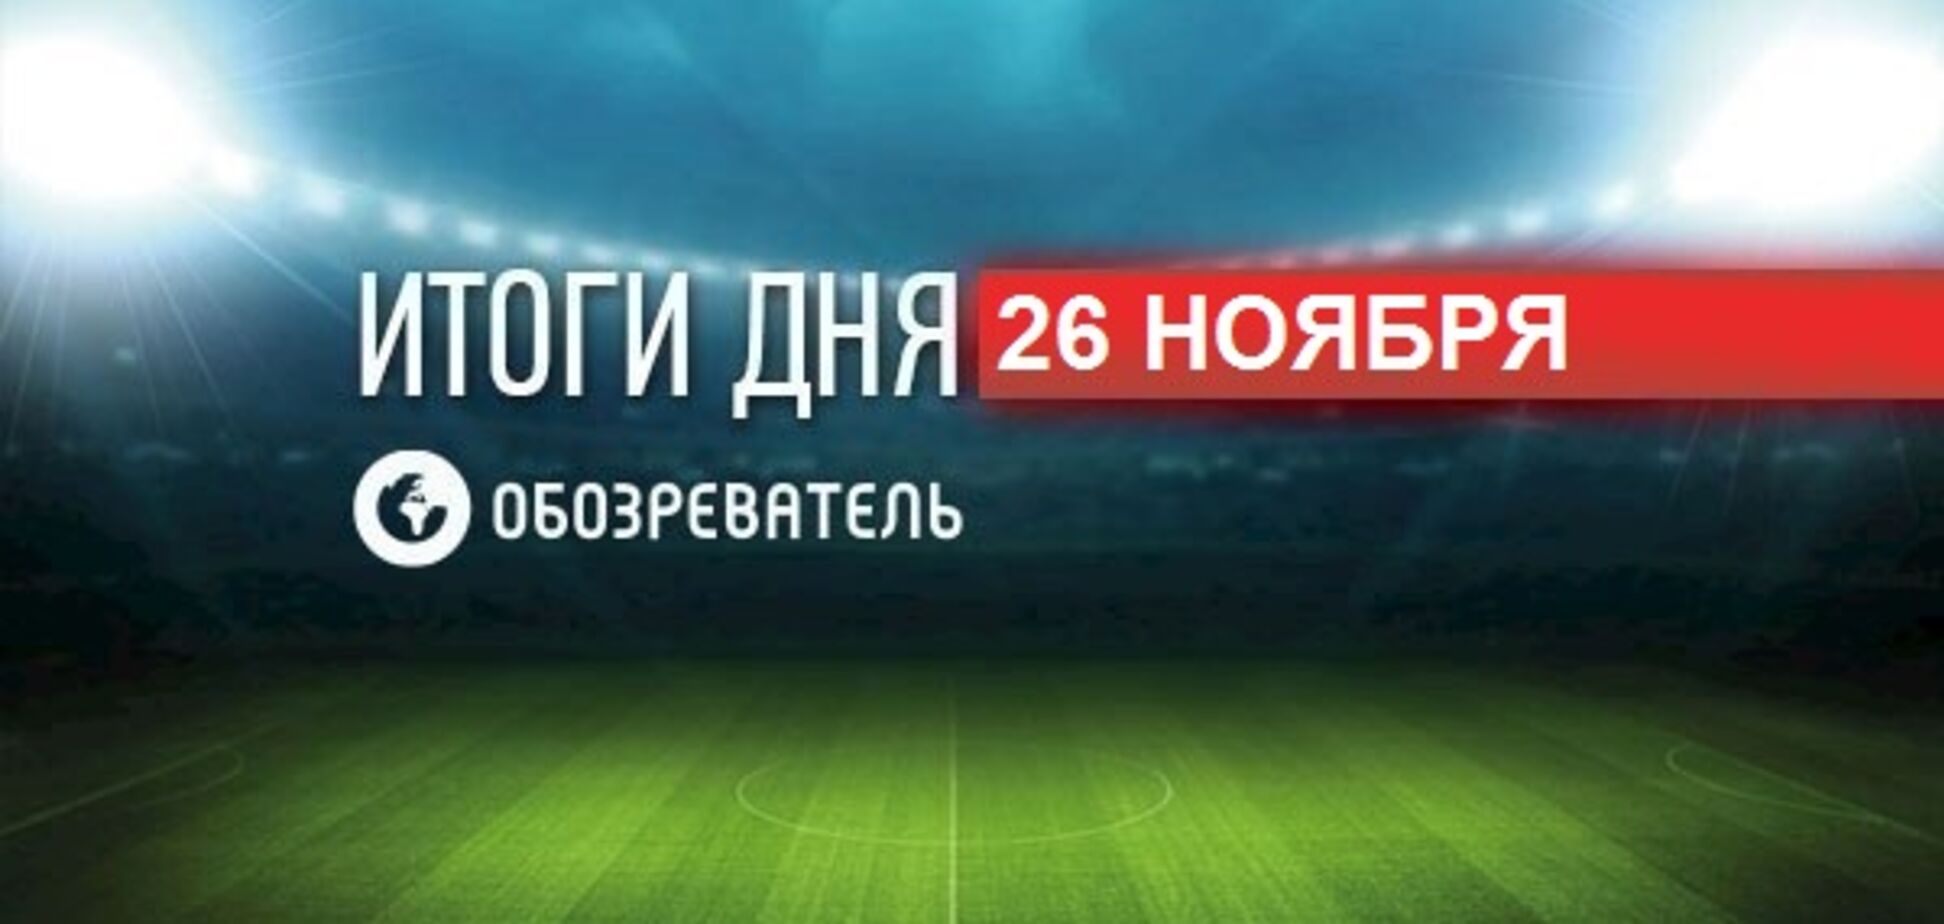 Сборную России по футболу обвинили в применении допинга: спортивные итоги 26 ноября